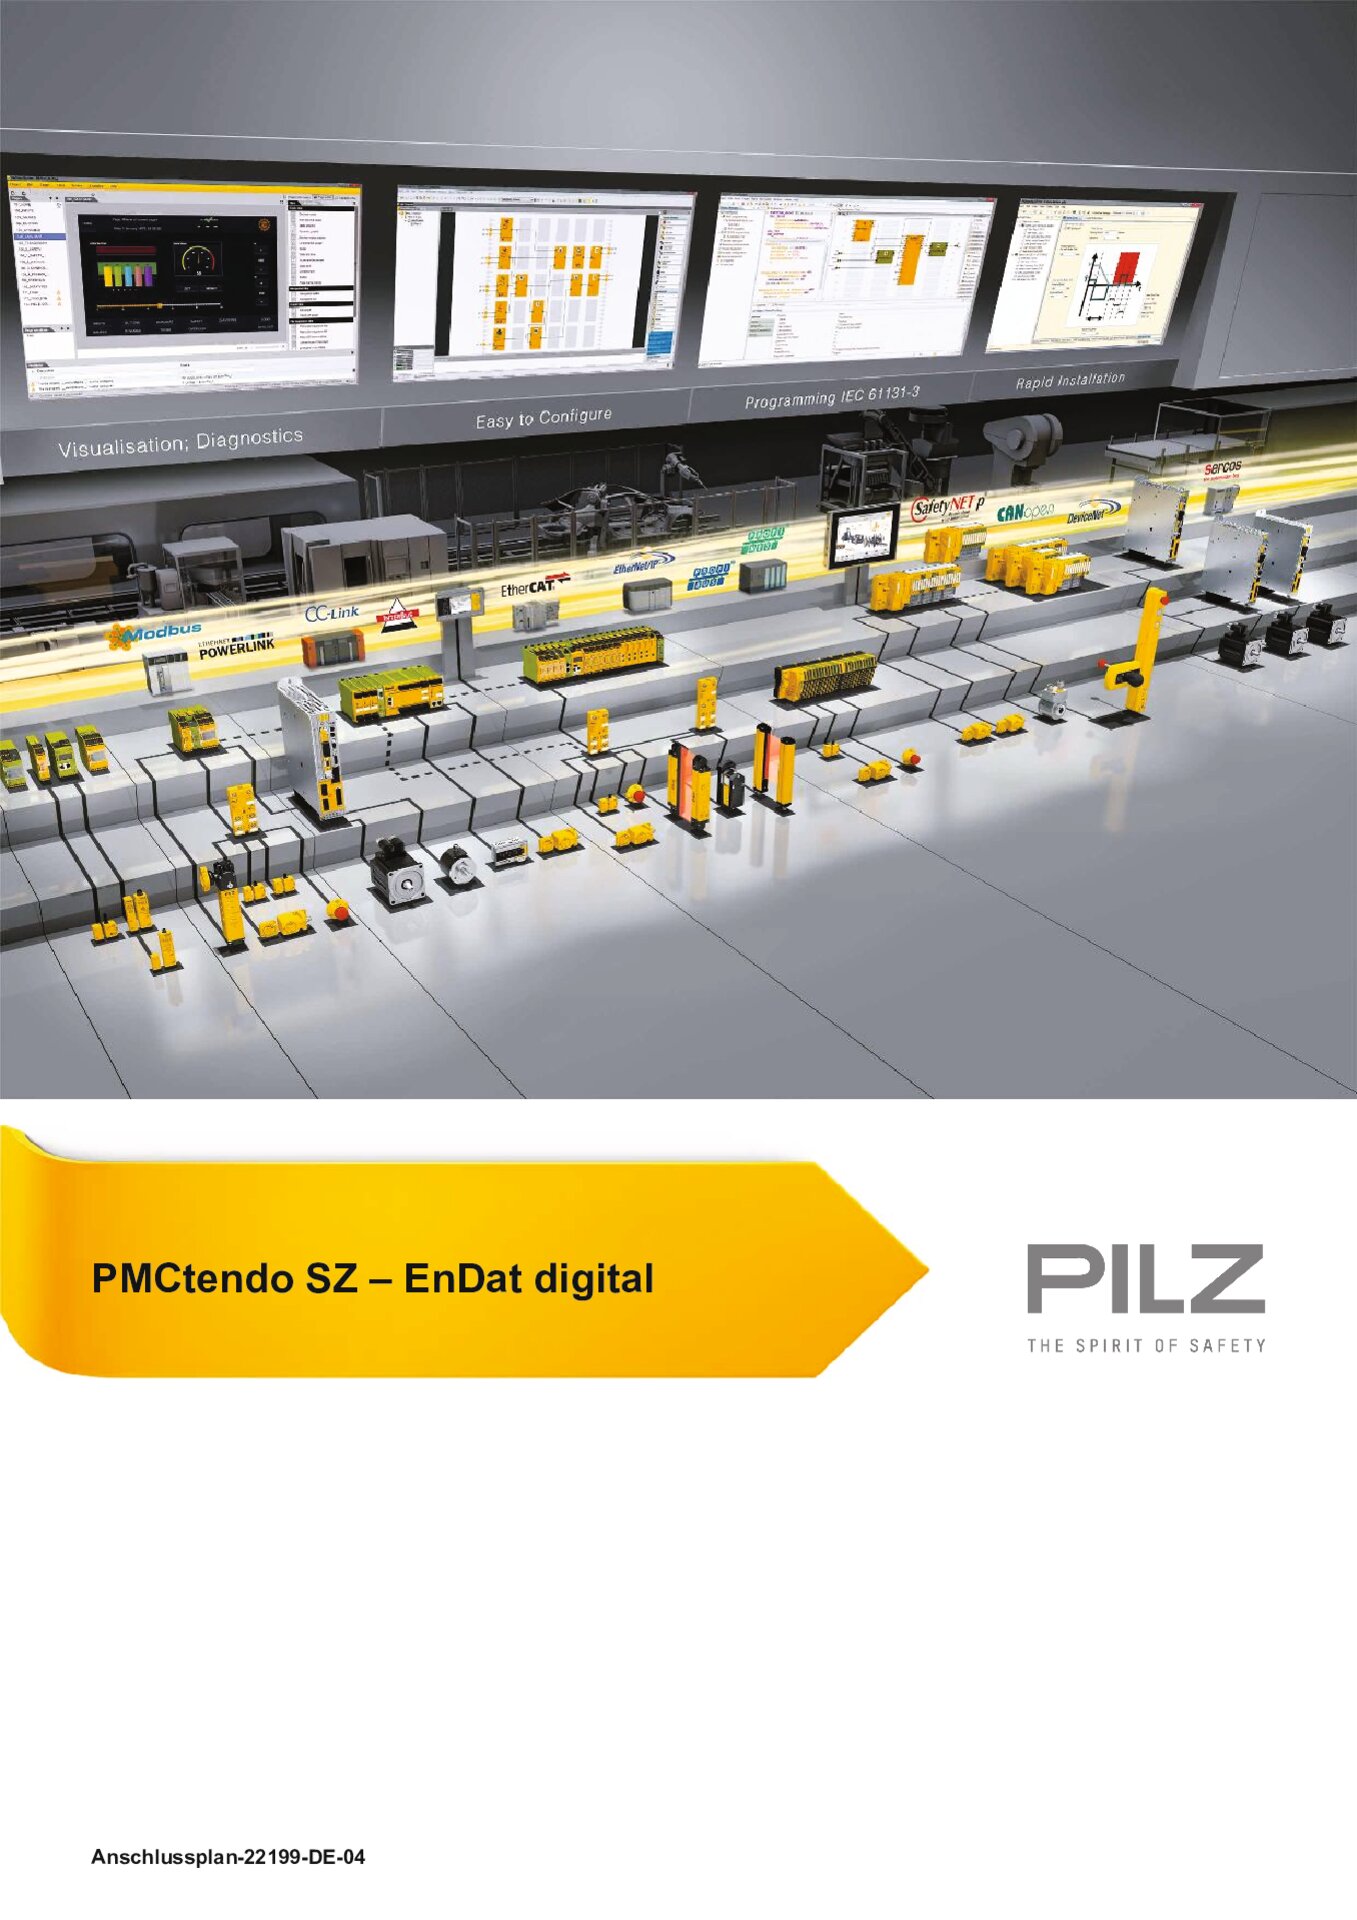 Anschlussplan PMCtendo SZ Feedback digital (Pilz ID 22199-DE-04)